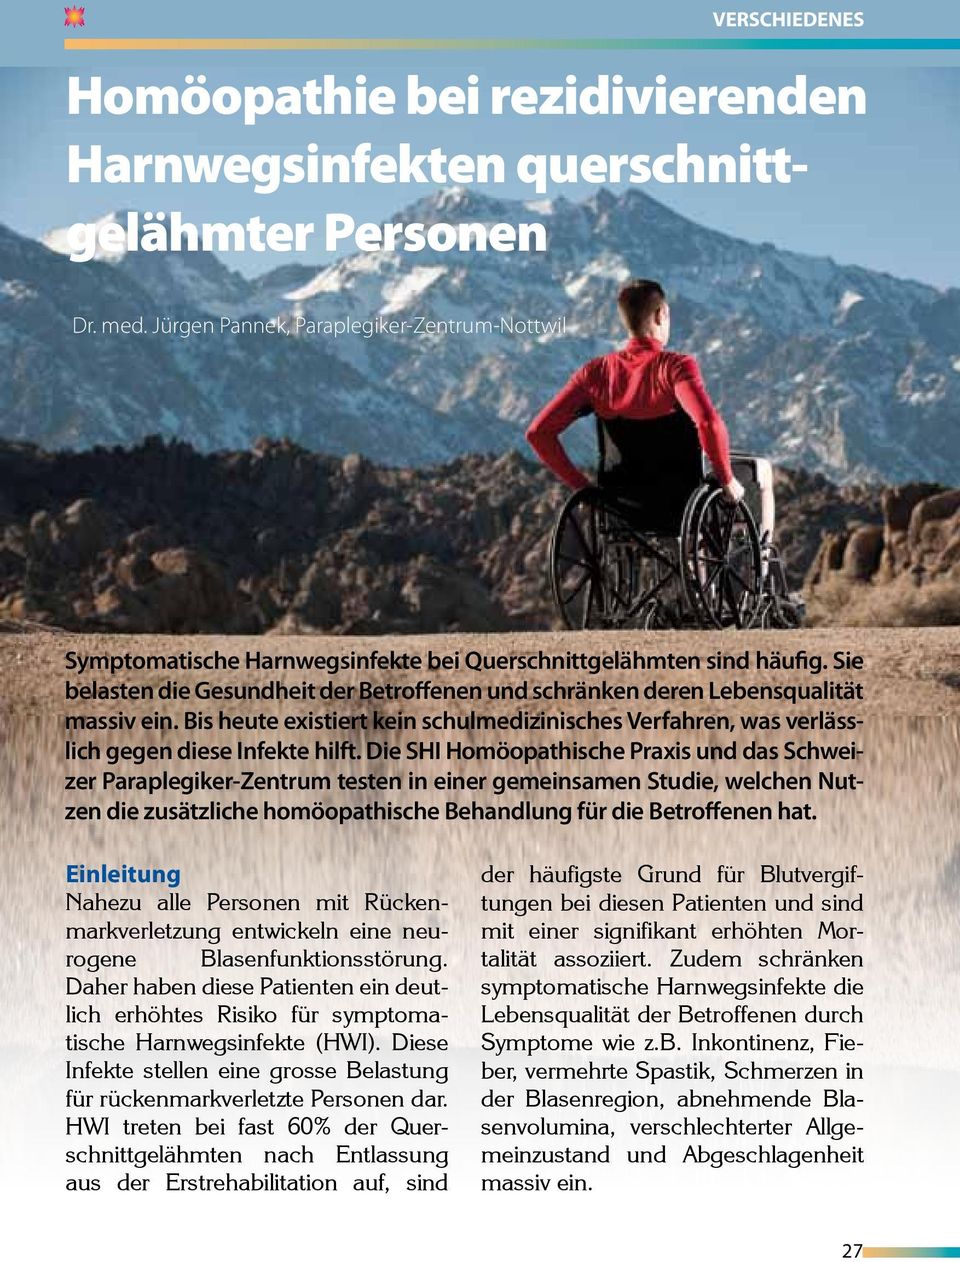 Die SHI Homöopathische Praxis und das Schweizer Paraplegiker-Zentrum testen in einer gemeinsamen Studie, welchen Nutzen die zusätzliche homöopathische Behandlung für die Betroffenen hat.